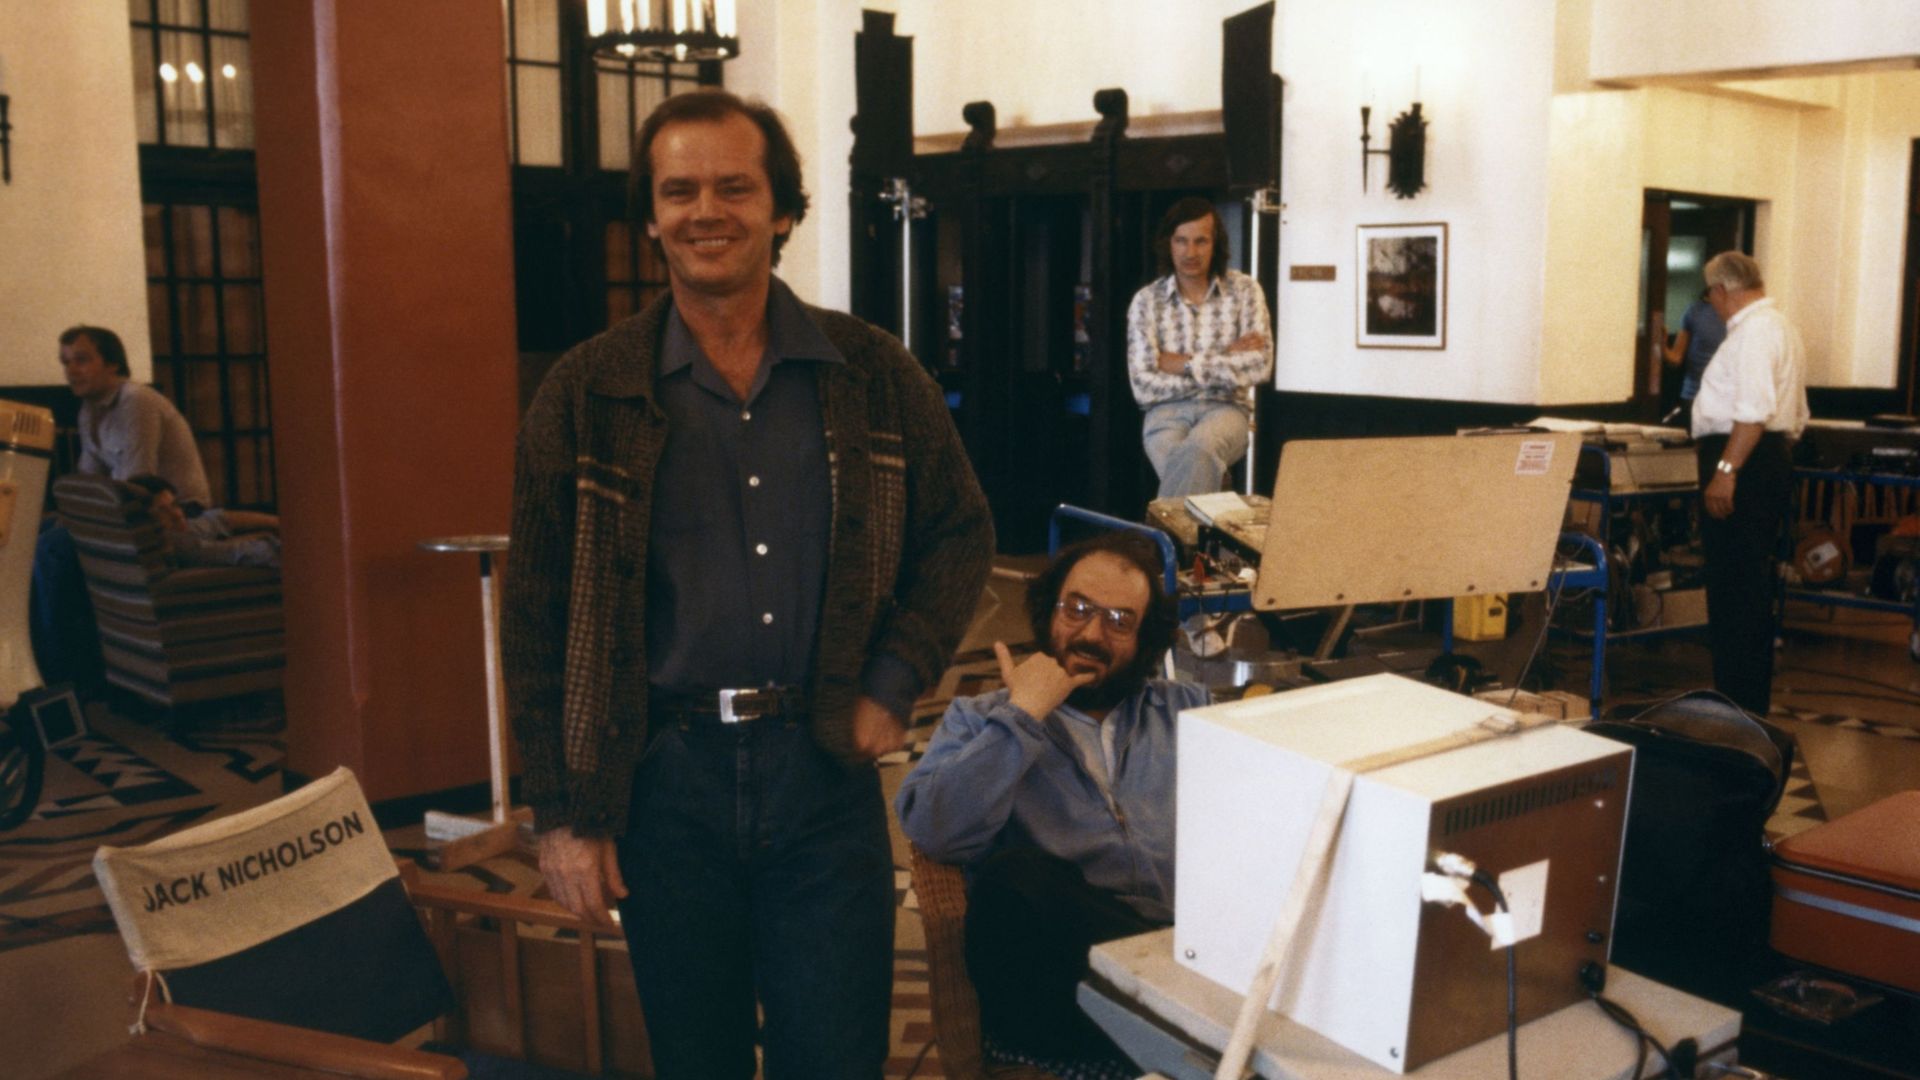 L'acteur américain Jack Nicholson et le réalisateur Stanley Kubrick sur le tournage du film The Shining, adapté du roman de Stephen King.